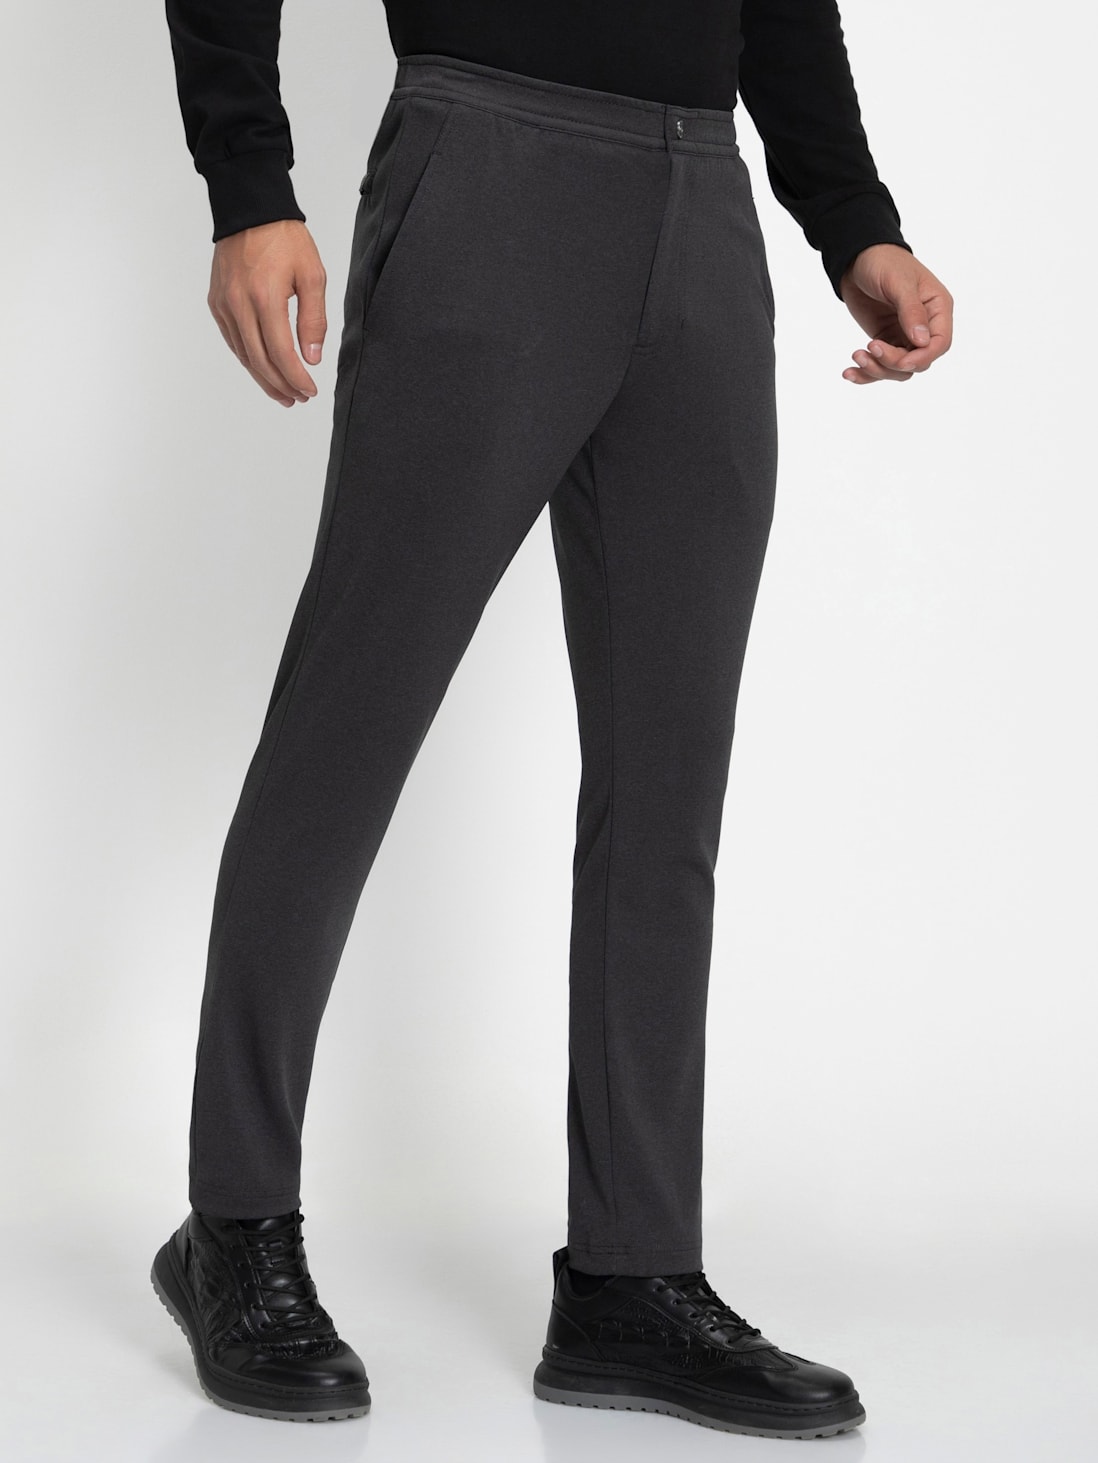 Buy Steel Grey Pants for Women by Dollar Online  Ajiocom